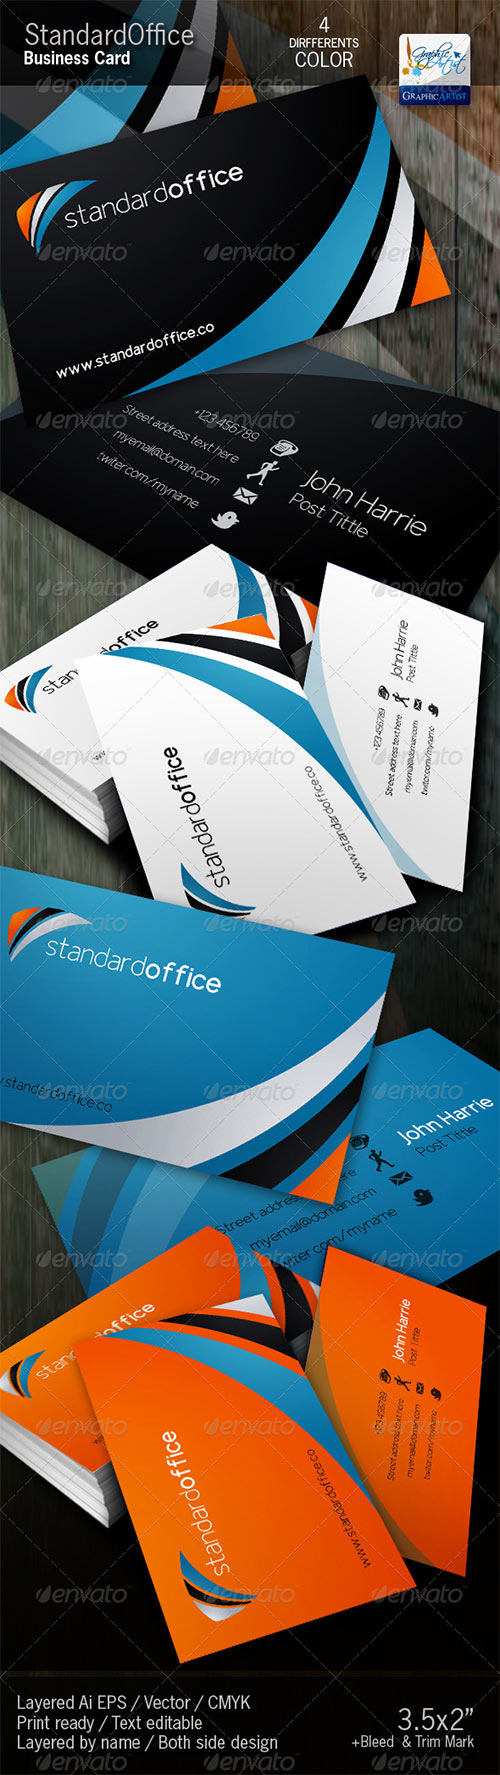 Standard Office Business Card 590650